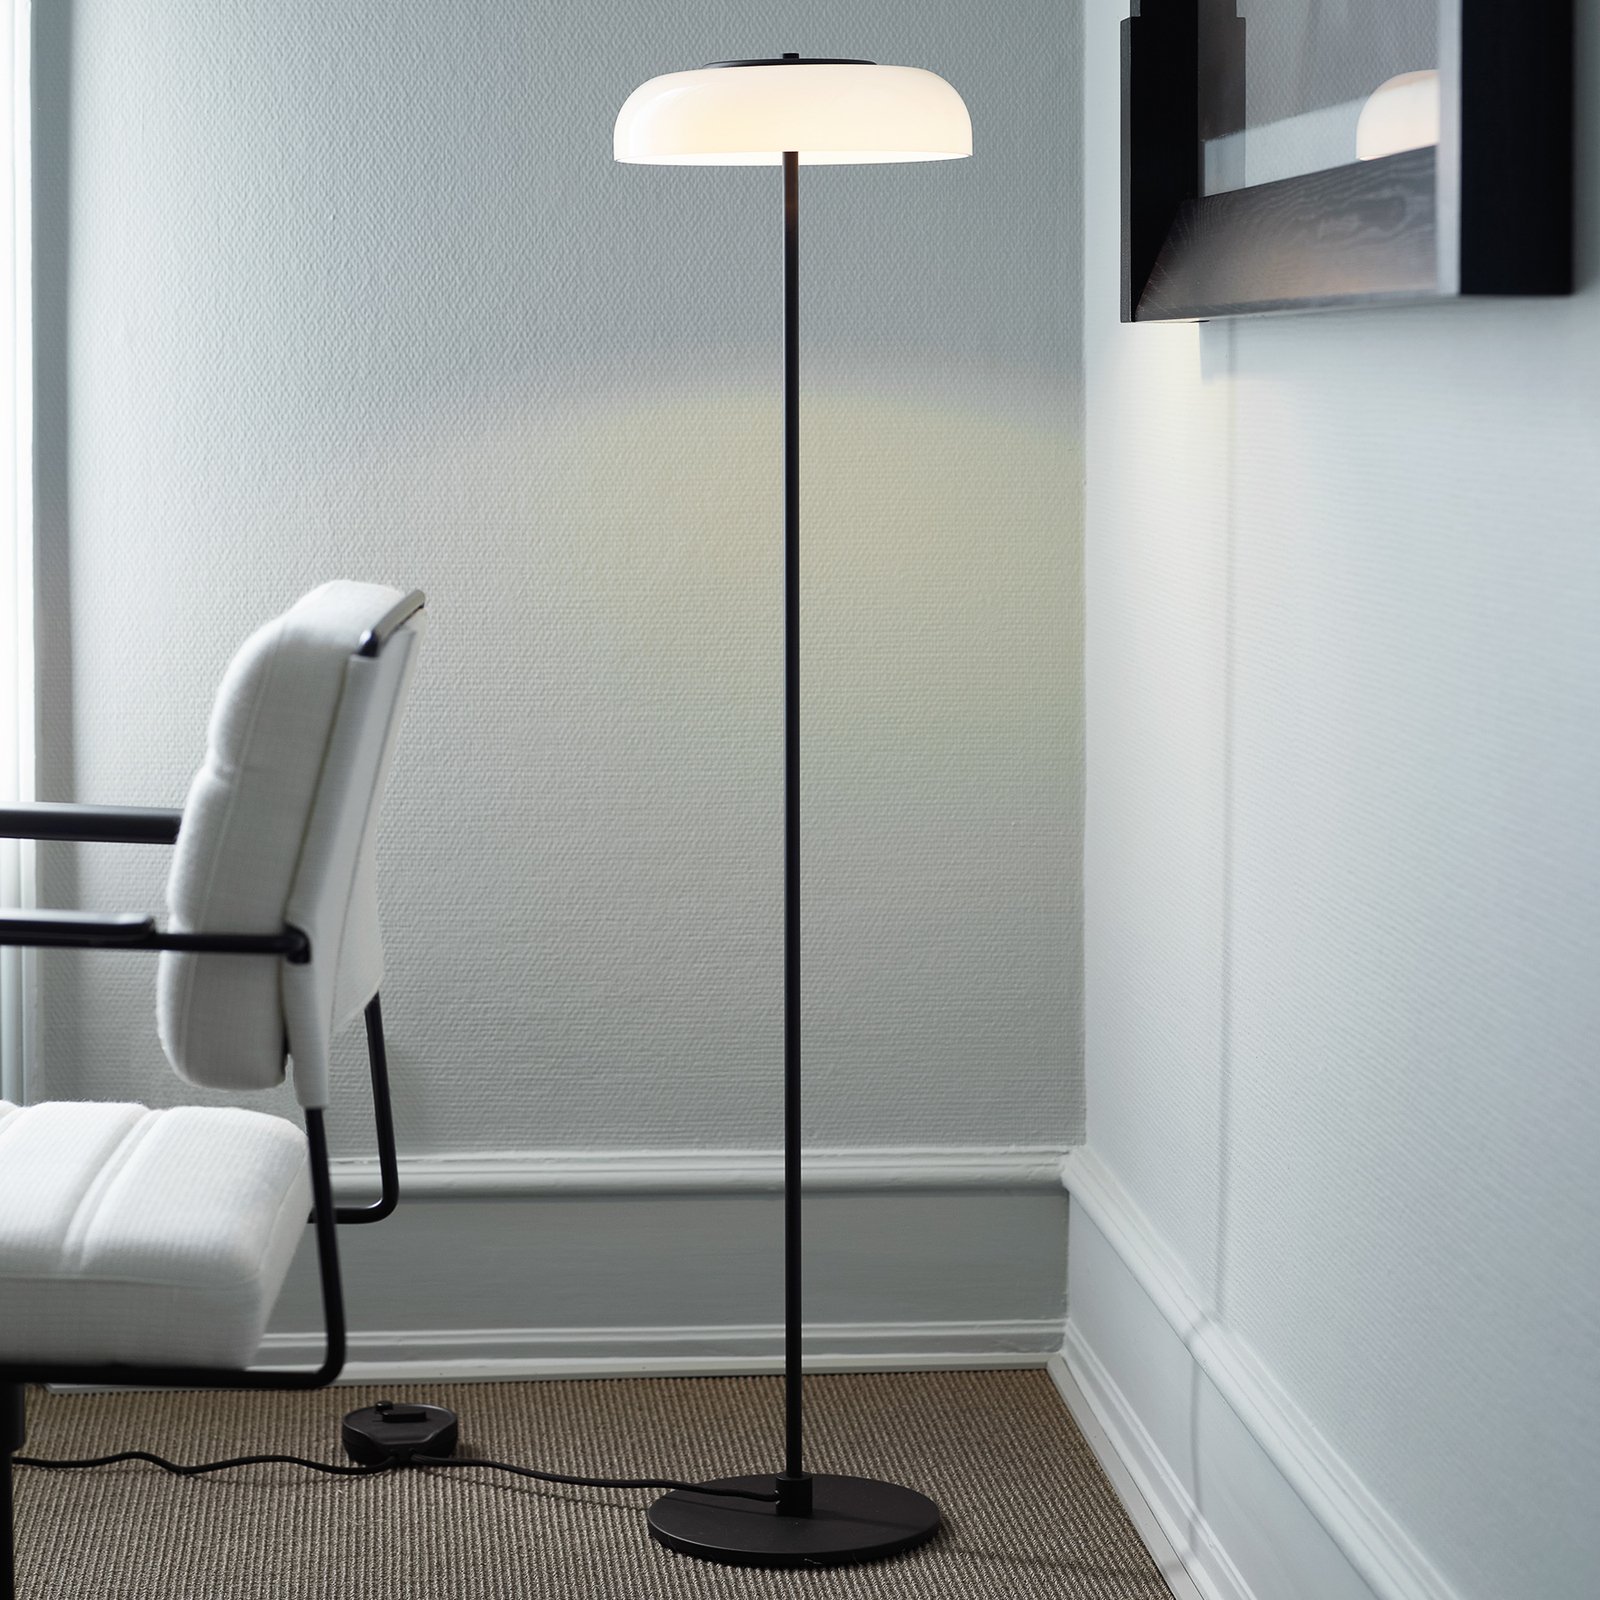 Nuura Blossi Floor Ø 29 LED floor lamp black/white